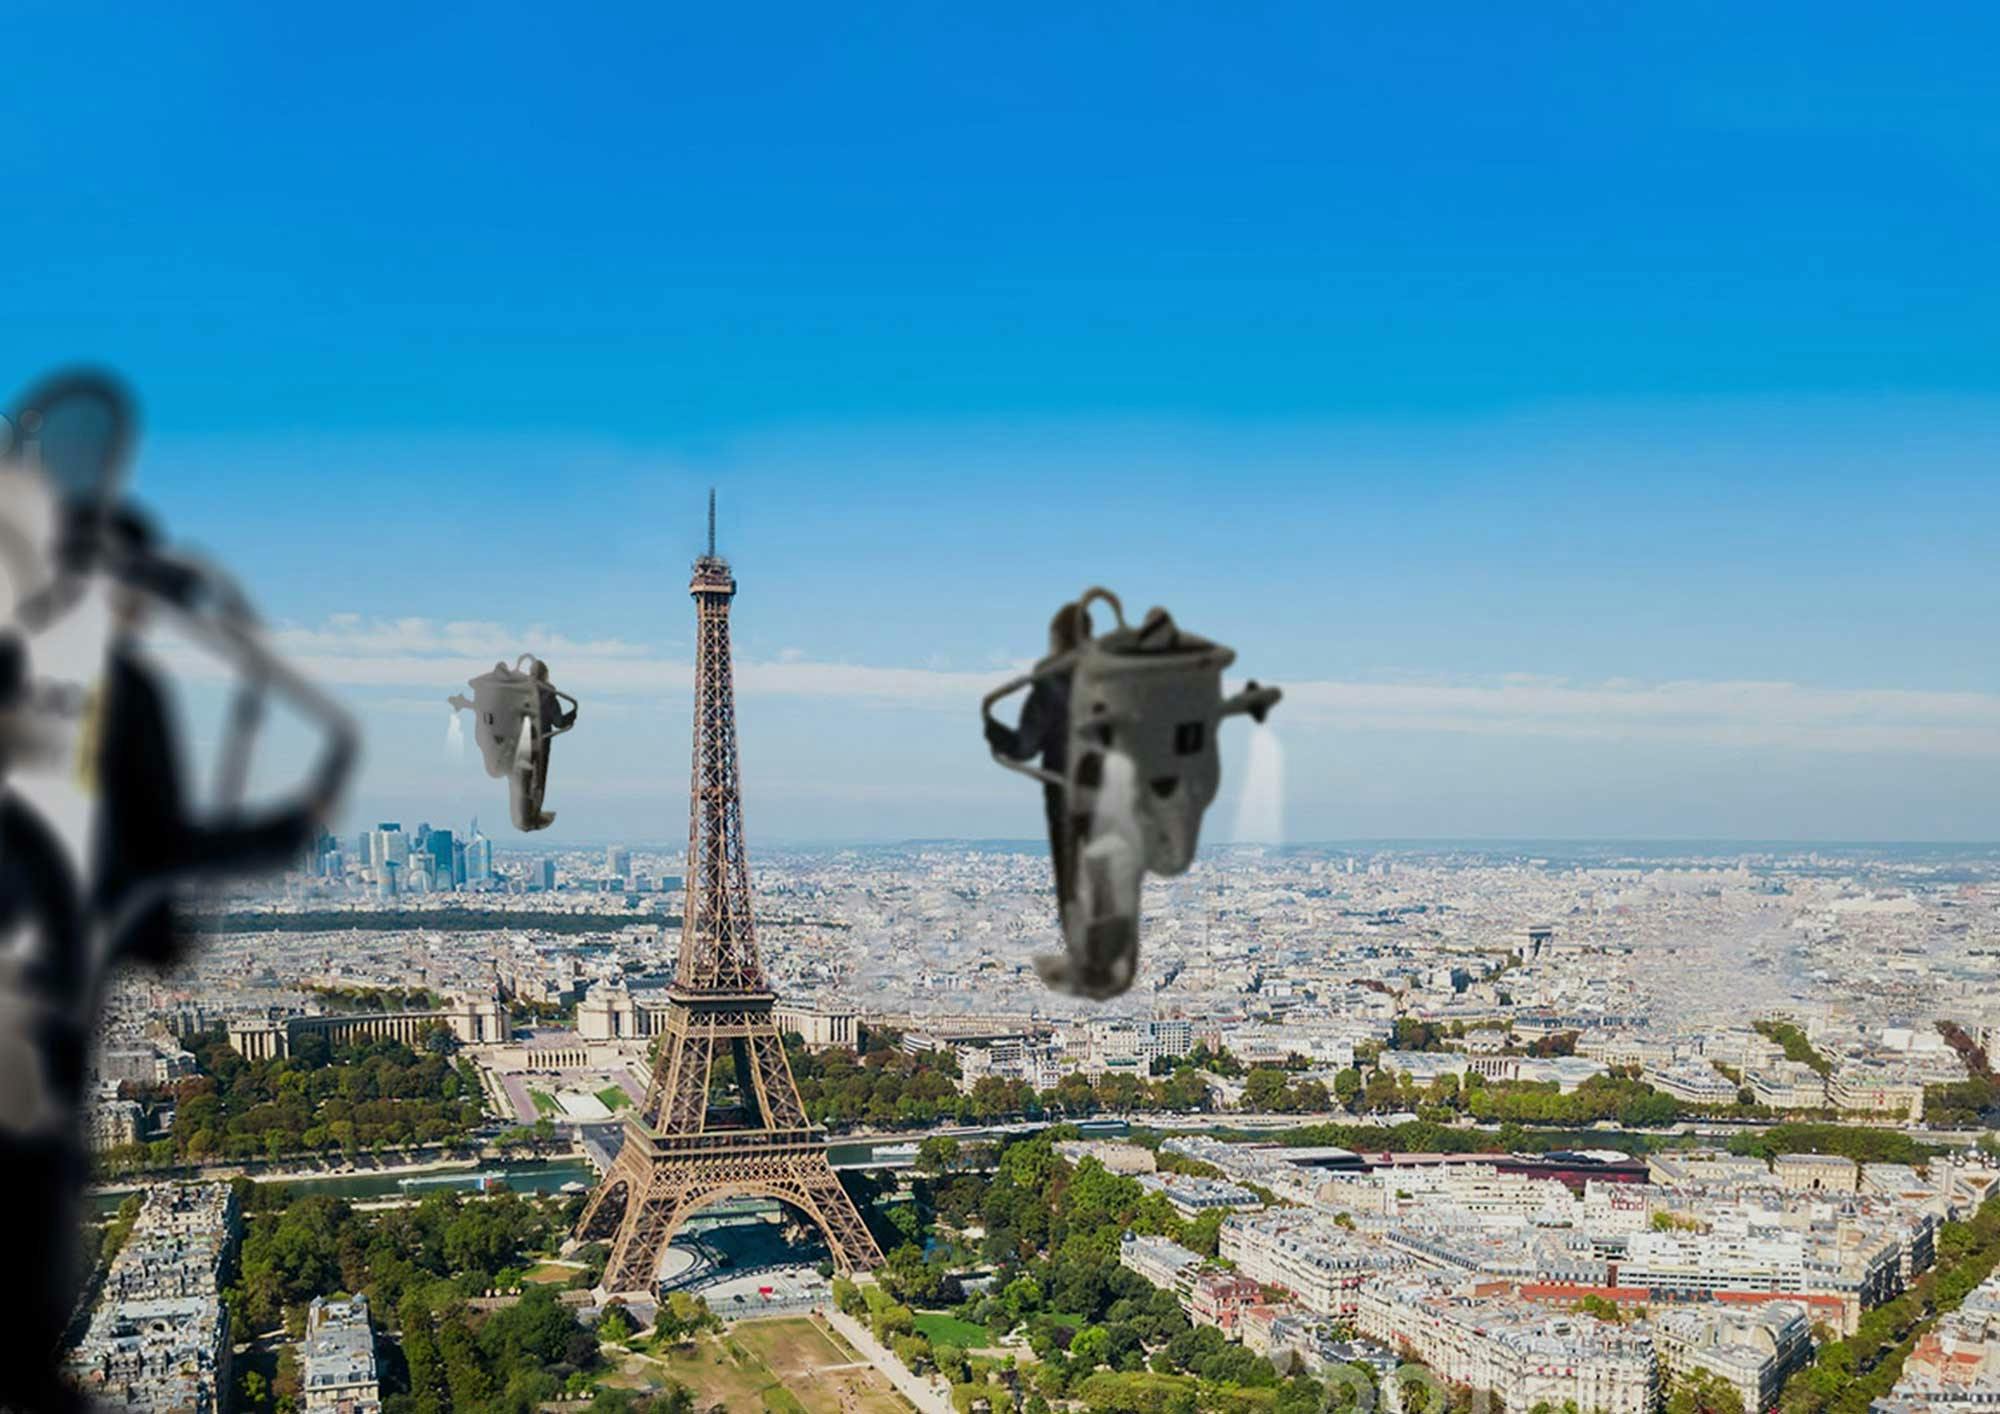 Paryski wiadukt w wirtualnej rzeczywistości